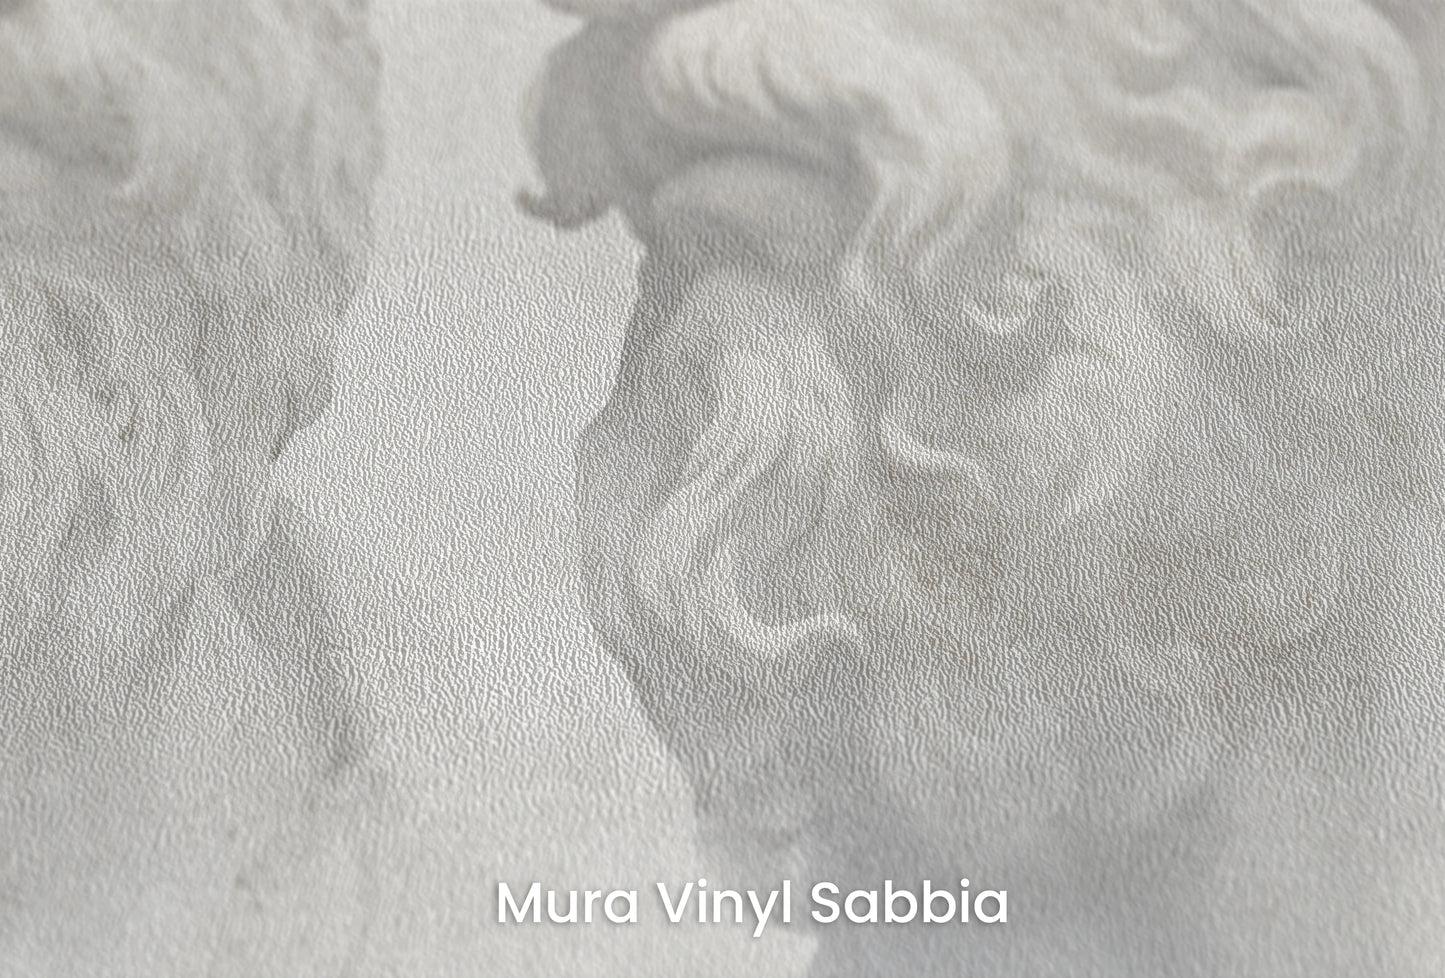 Zbliżenie na artystyczną fototapetę o nazwie Echoes of Wisdom na podłożu Mura Vinyl Sabbia struktura grubego ziarna piasku.